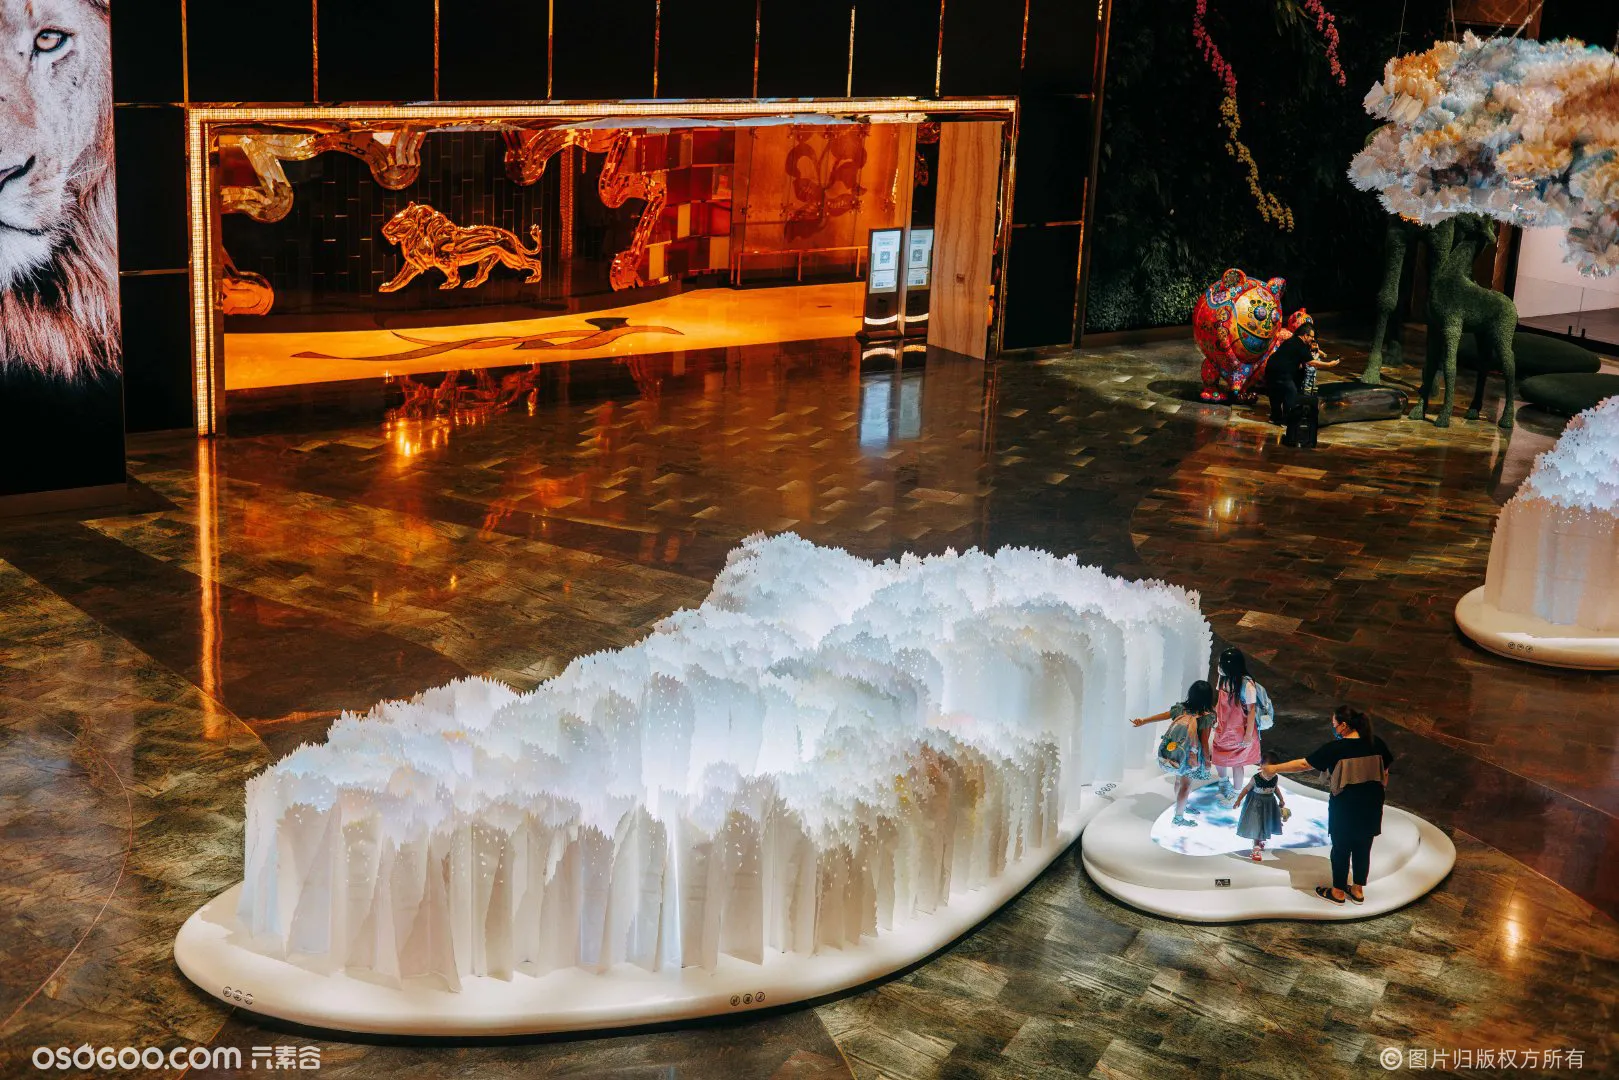 《蜕变山水:无穷尽》多媒体纸雕花园艺术装置